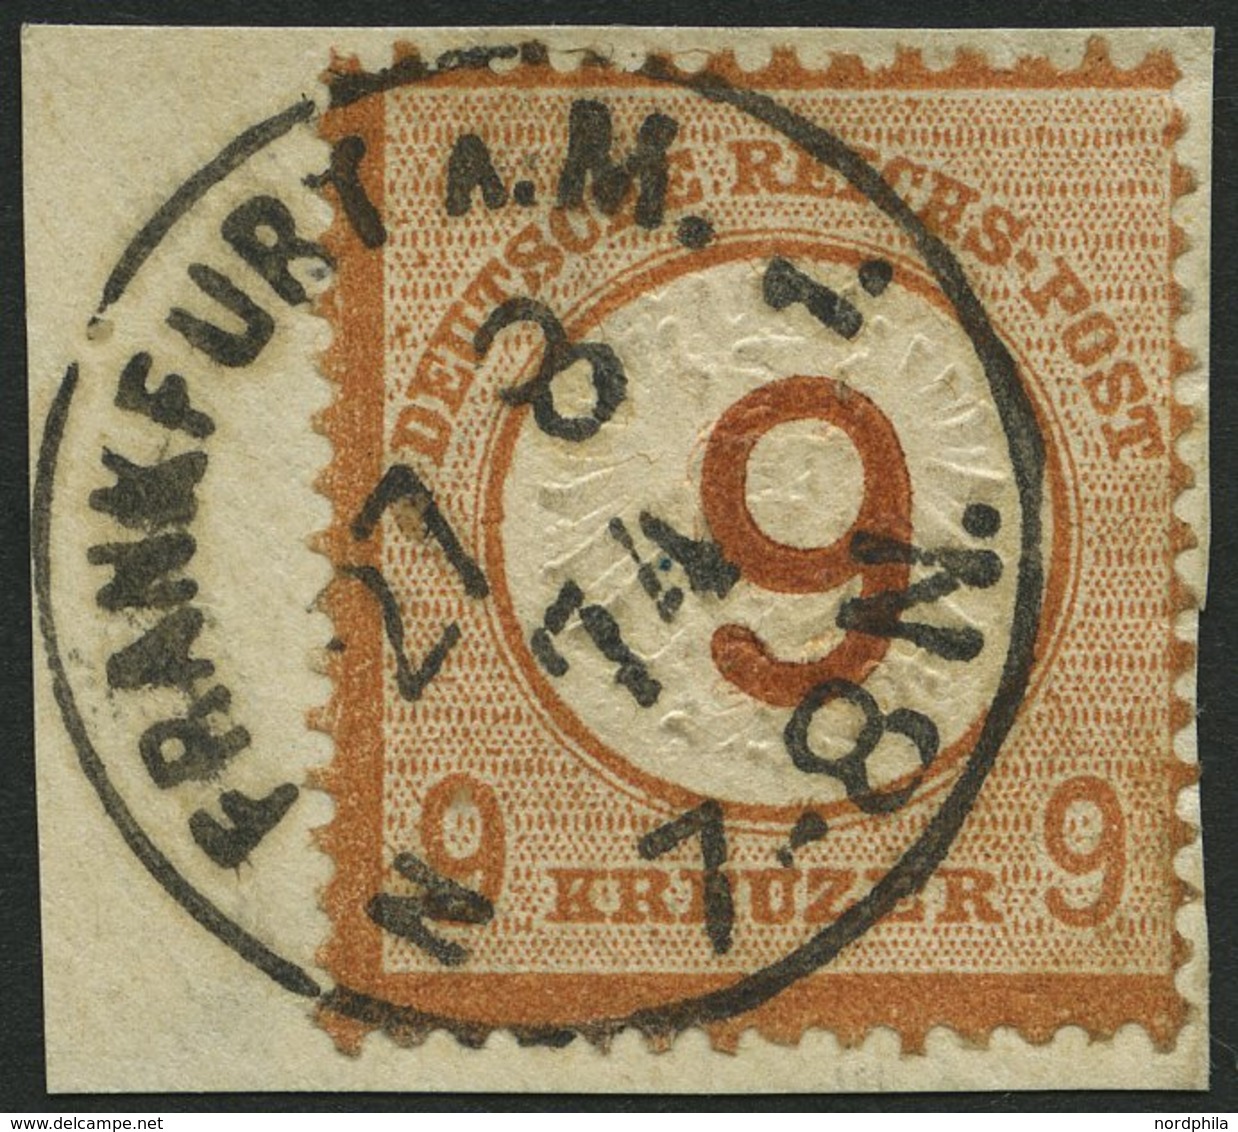 Dt. Reich 30 BrfStk, 1874, 9 Auf 9 Kr. Braunorange, K1 FRANKFURT A.M., Prachtbriefstück, Fotoattest Brugger, Mi. (600.-) - Used Stamps